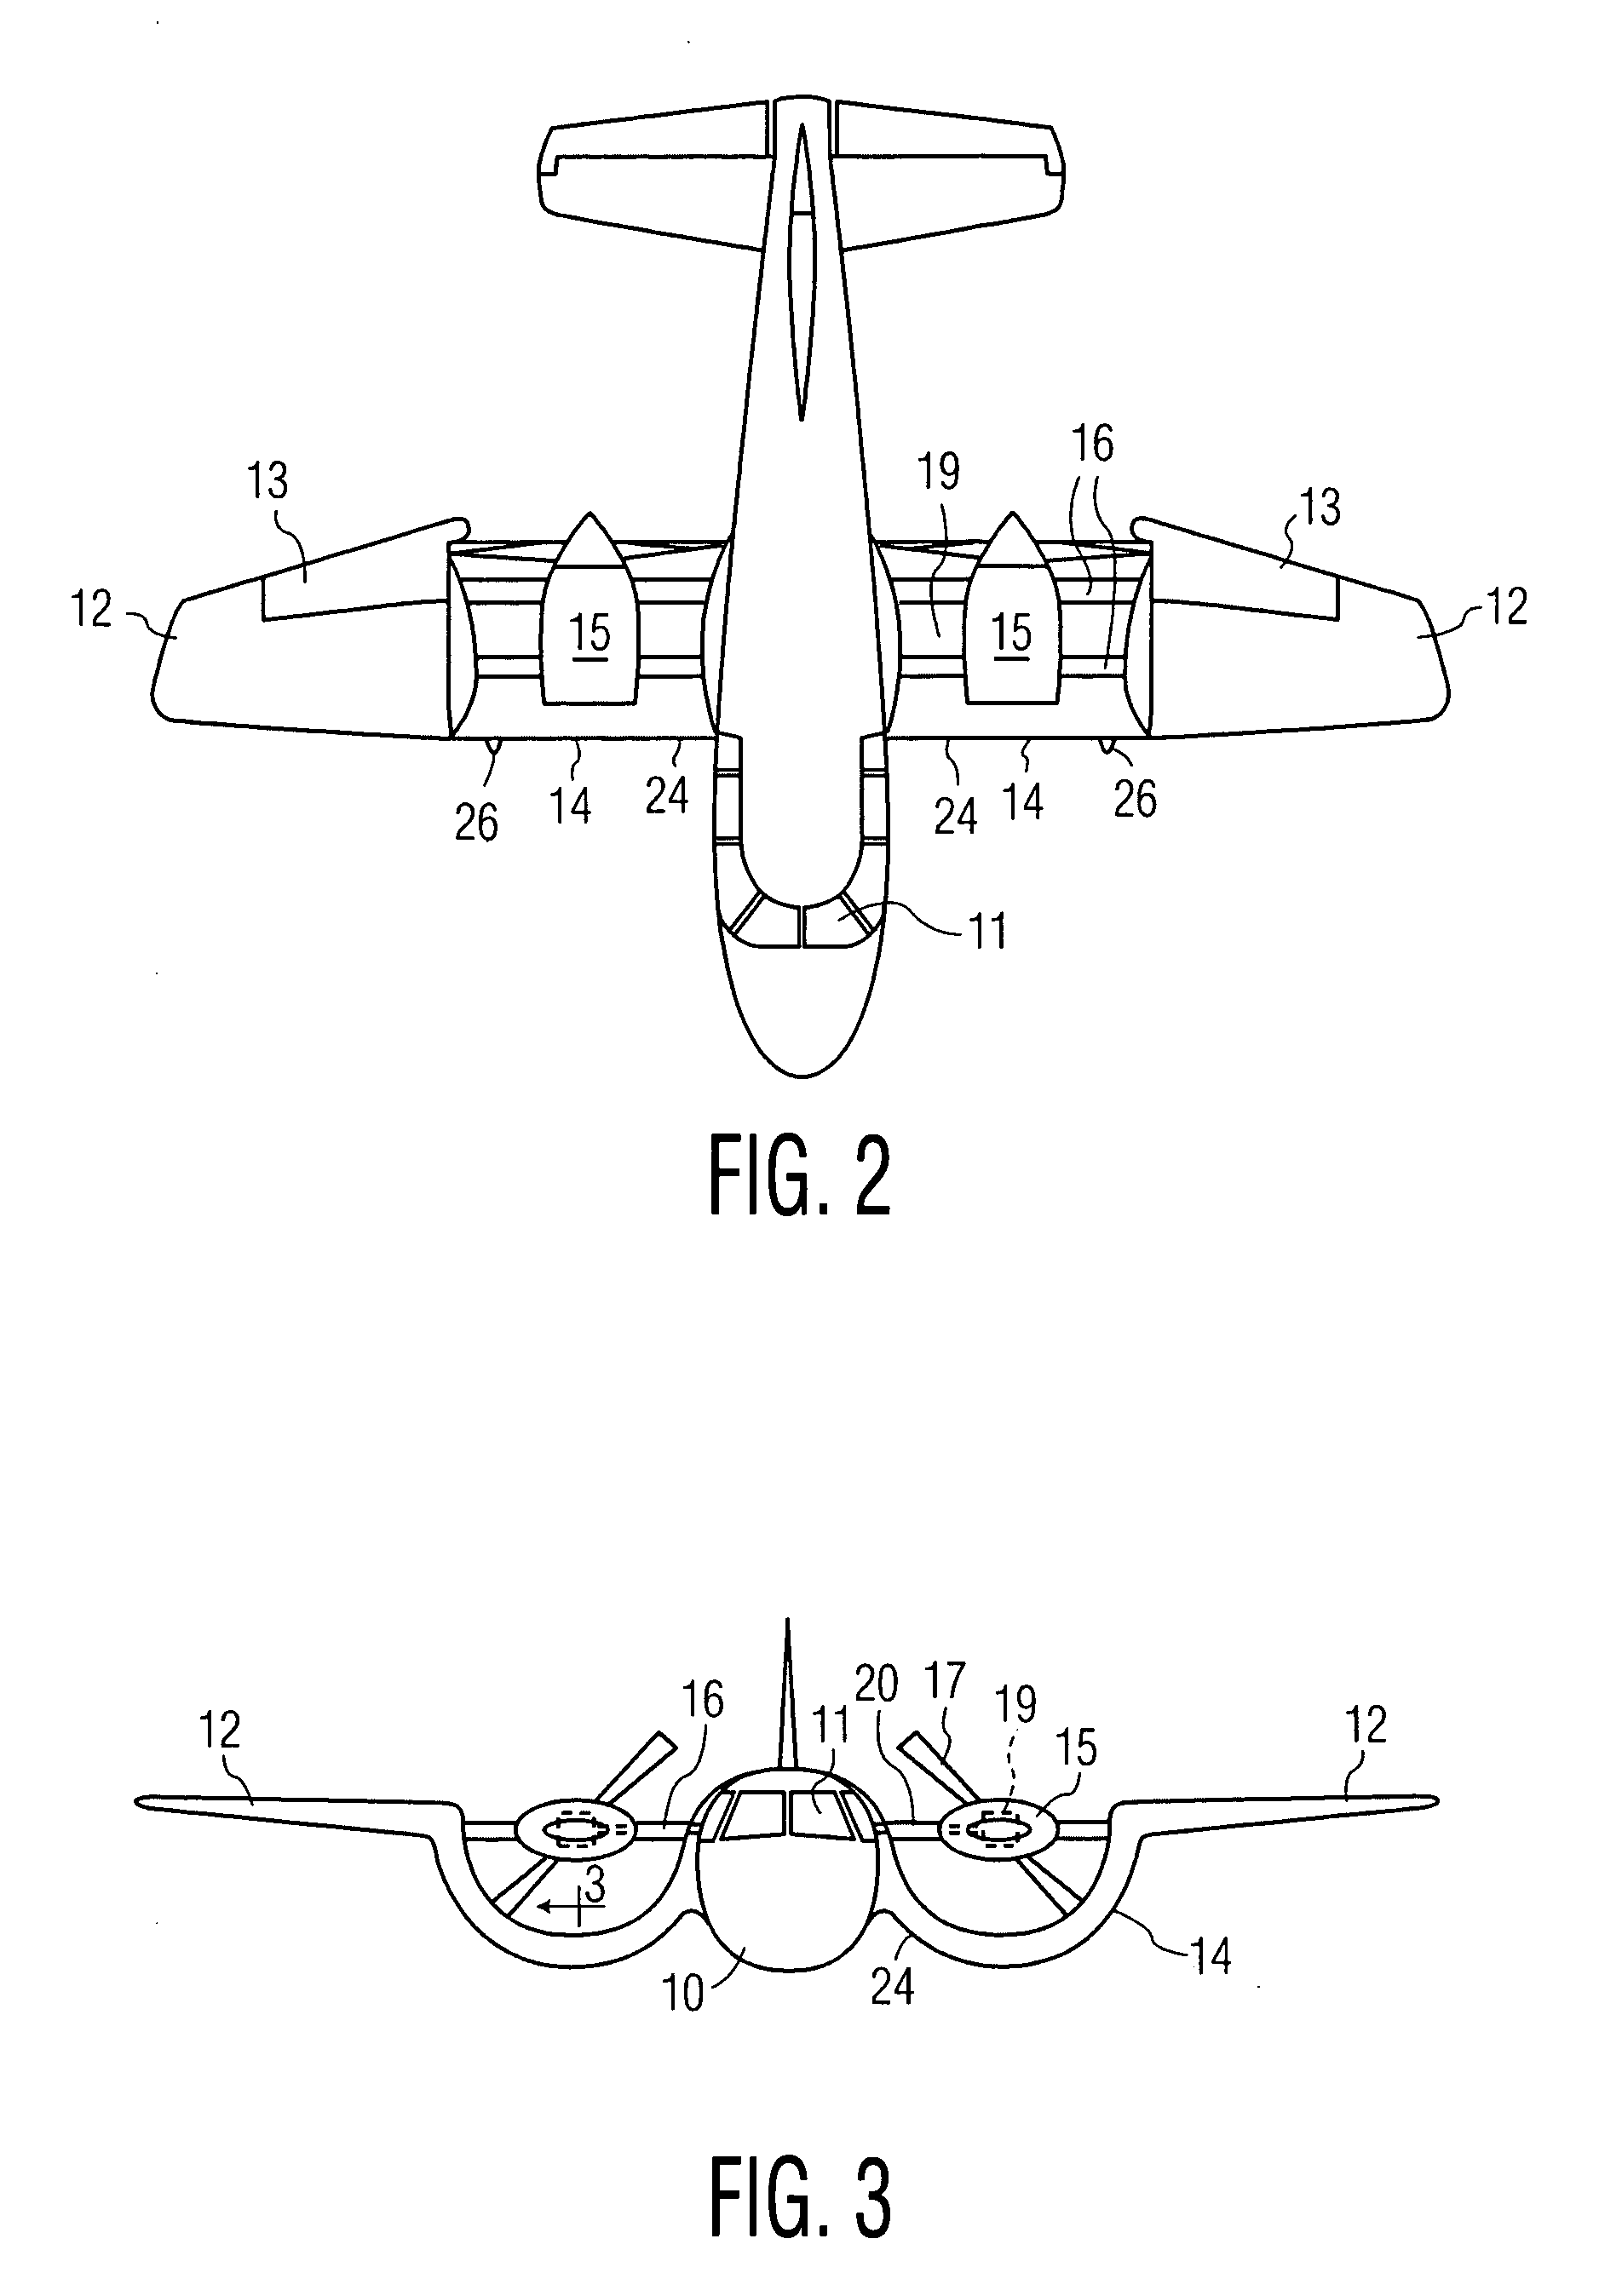 VTOL personal aircraft